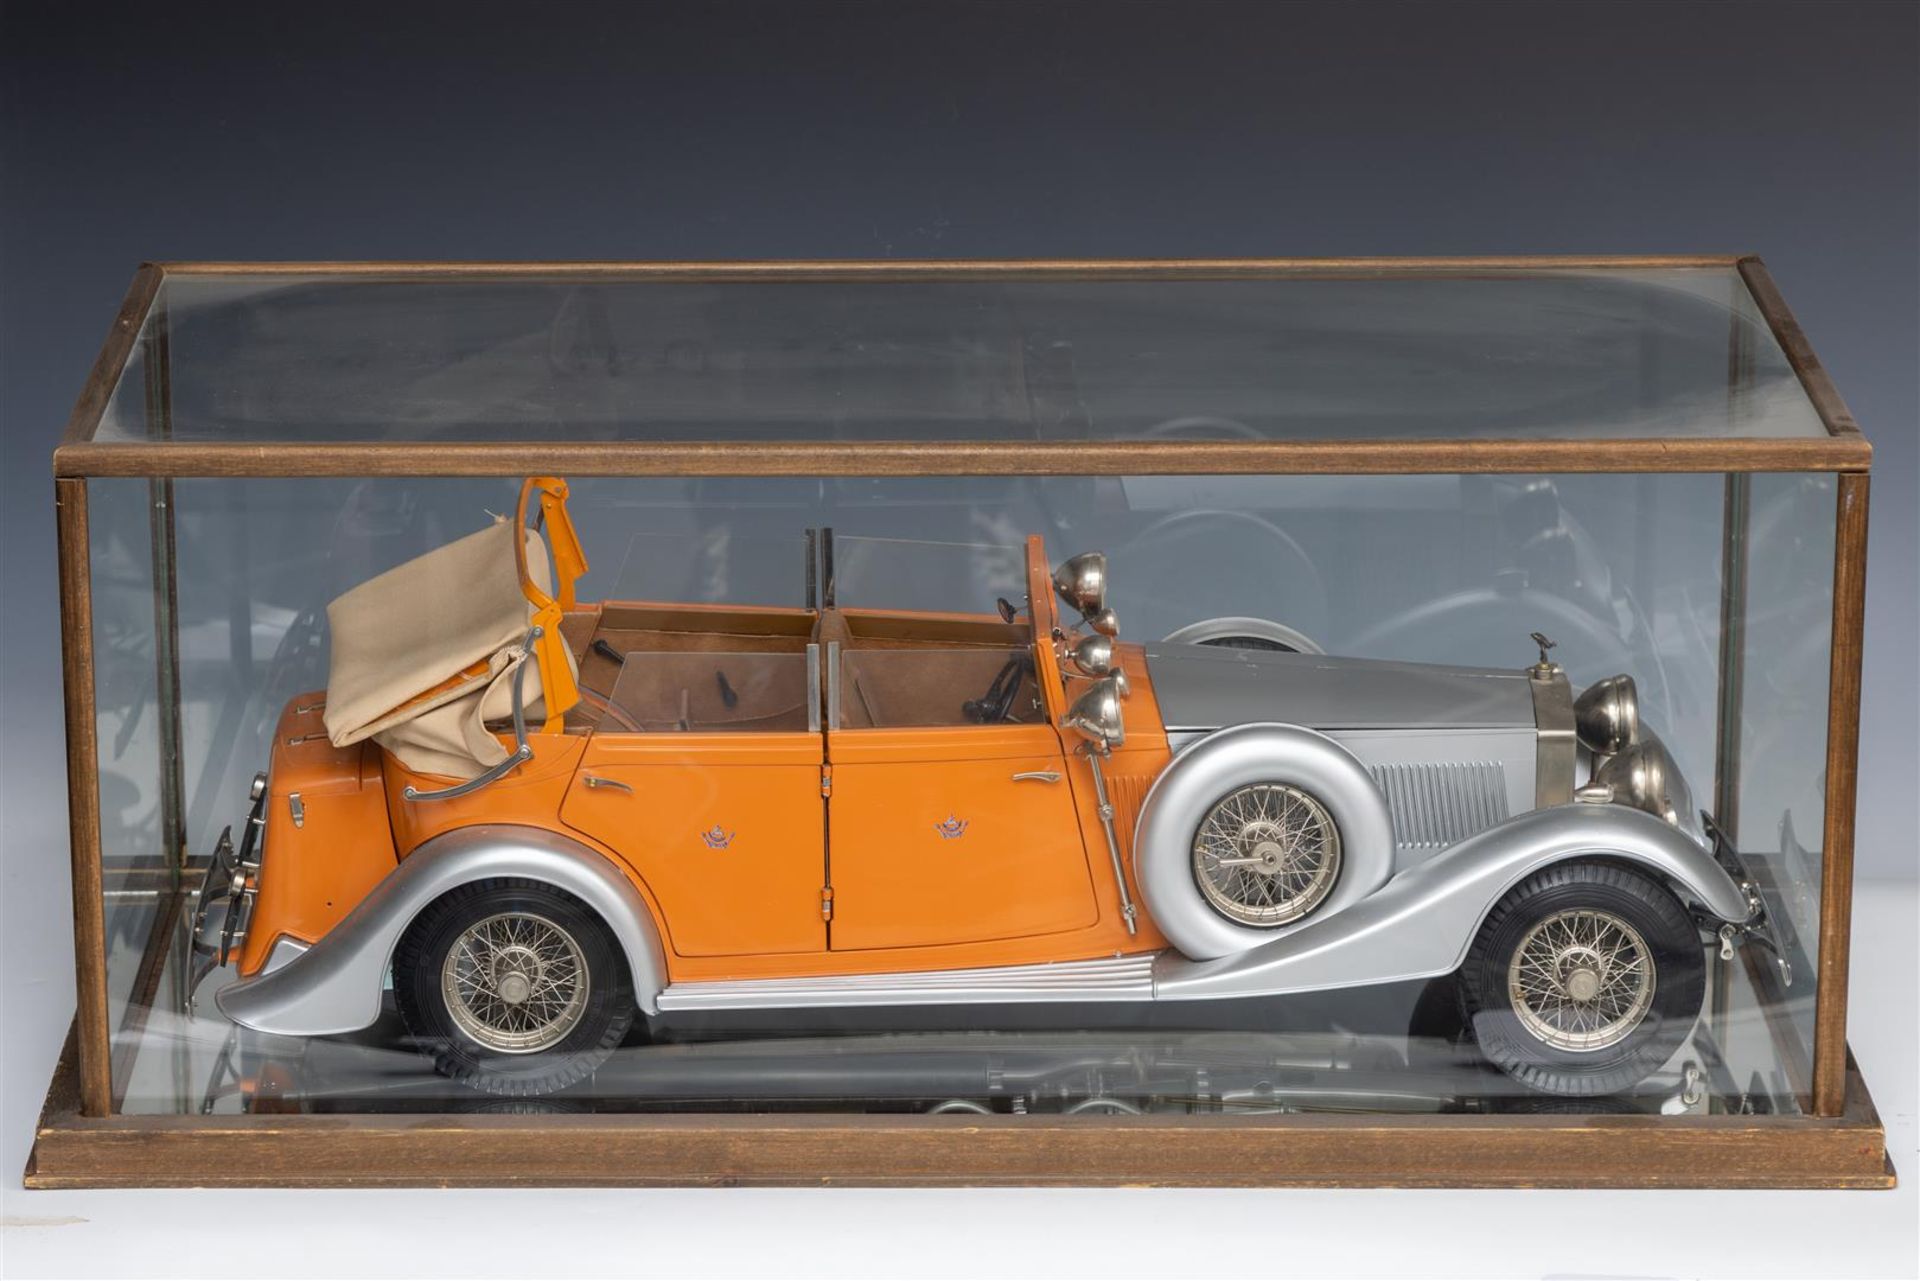 A scale model of a 1937 Rolls Royce.